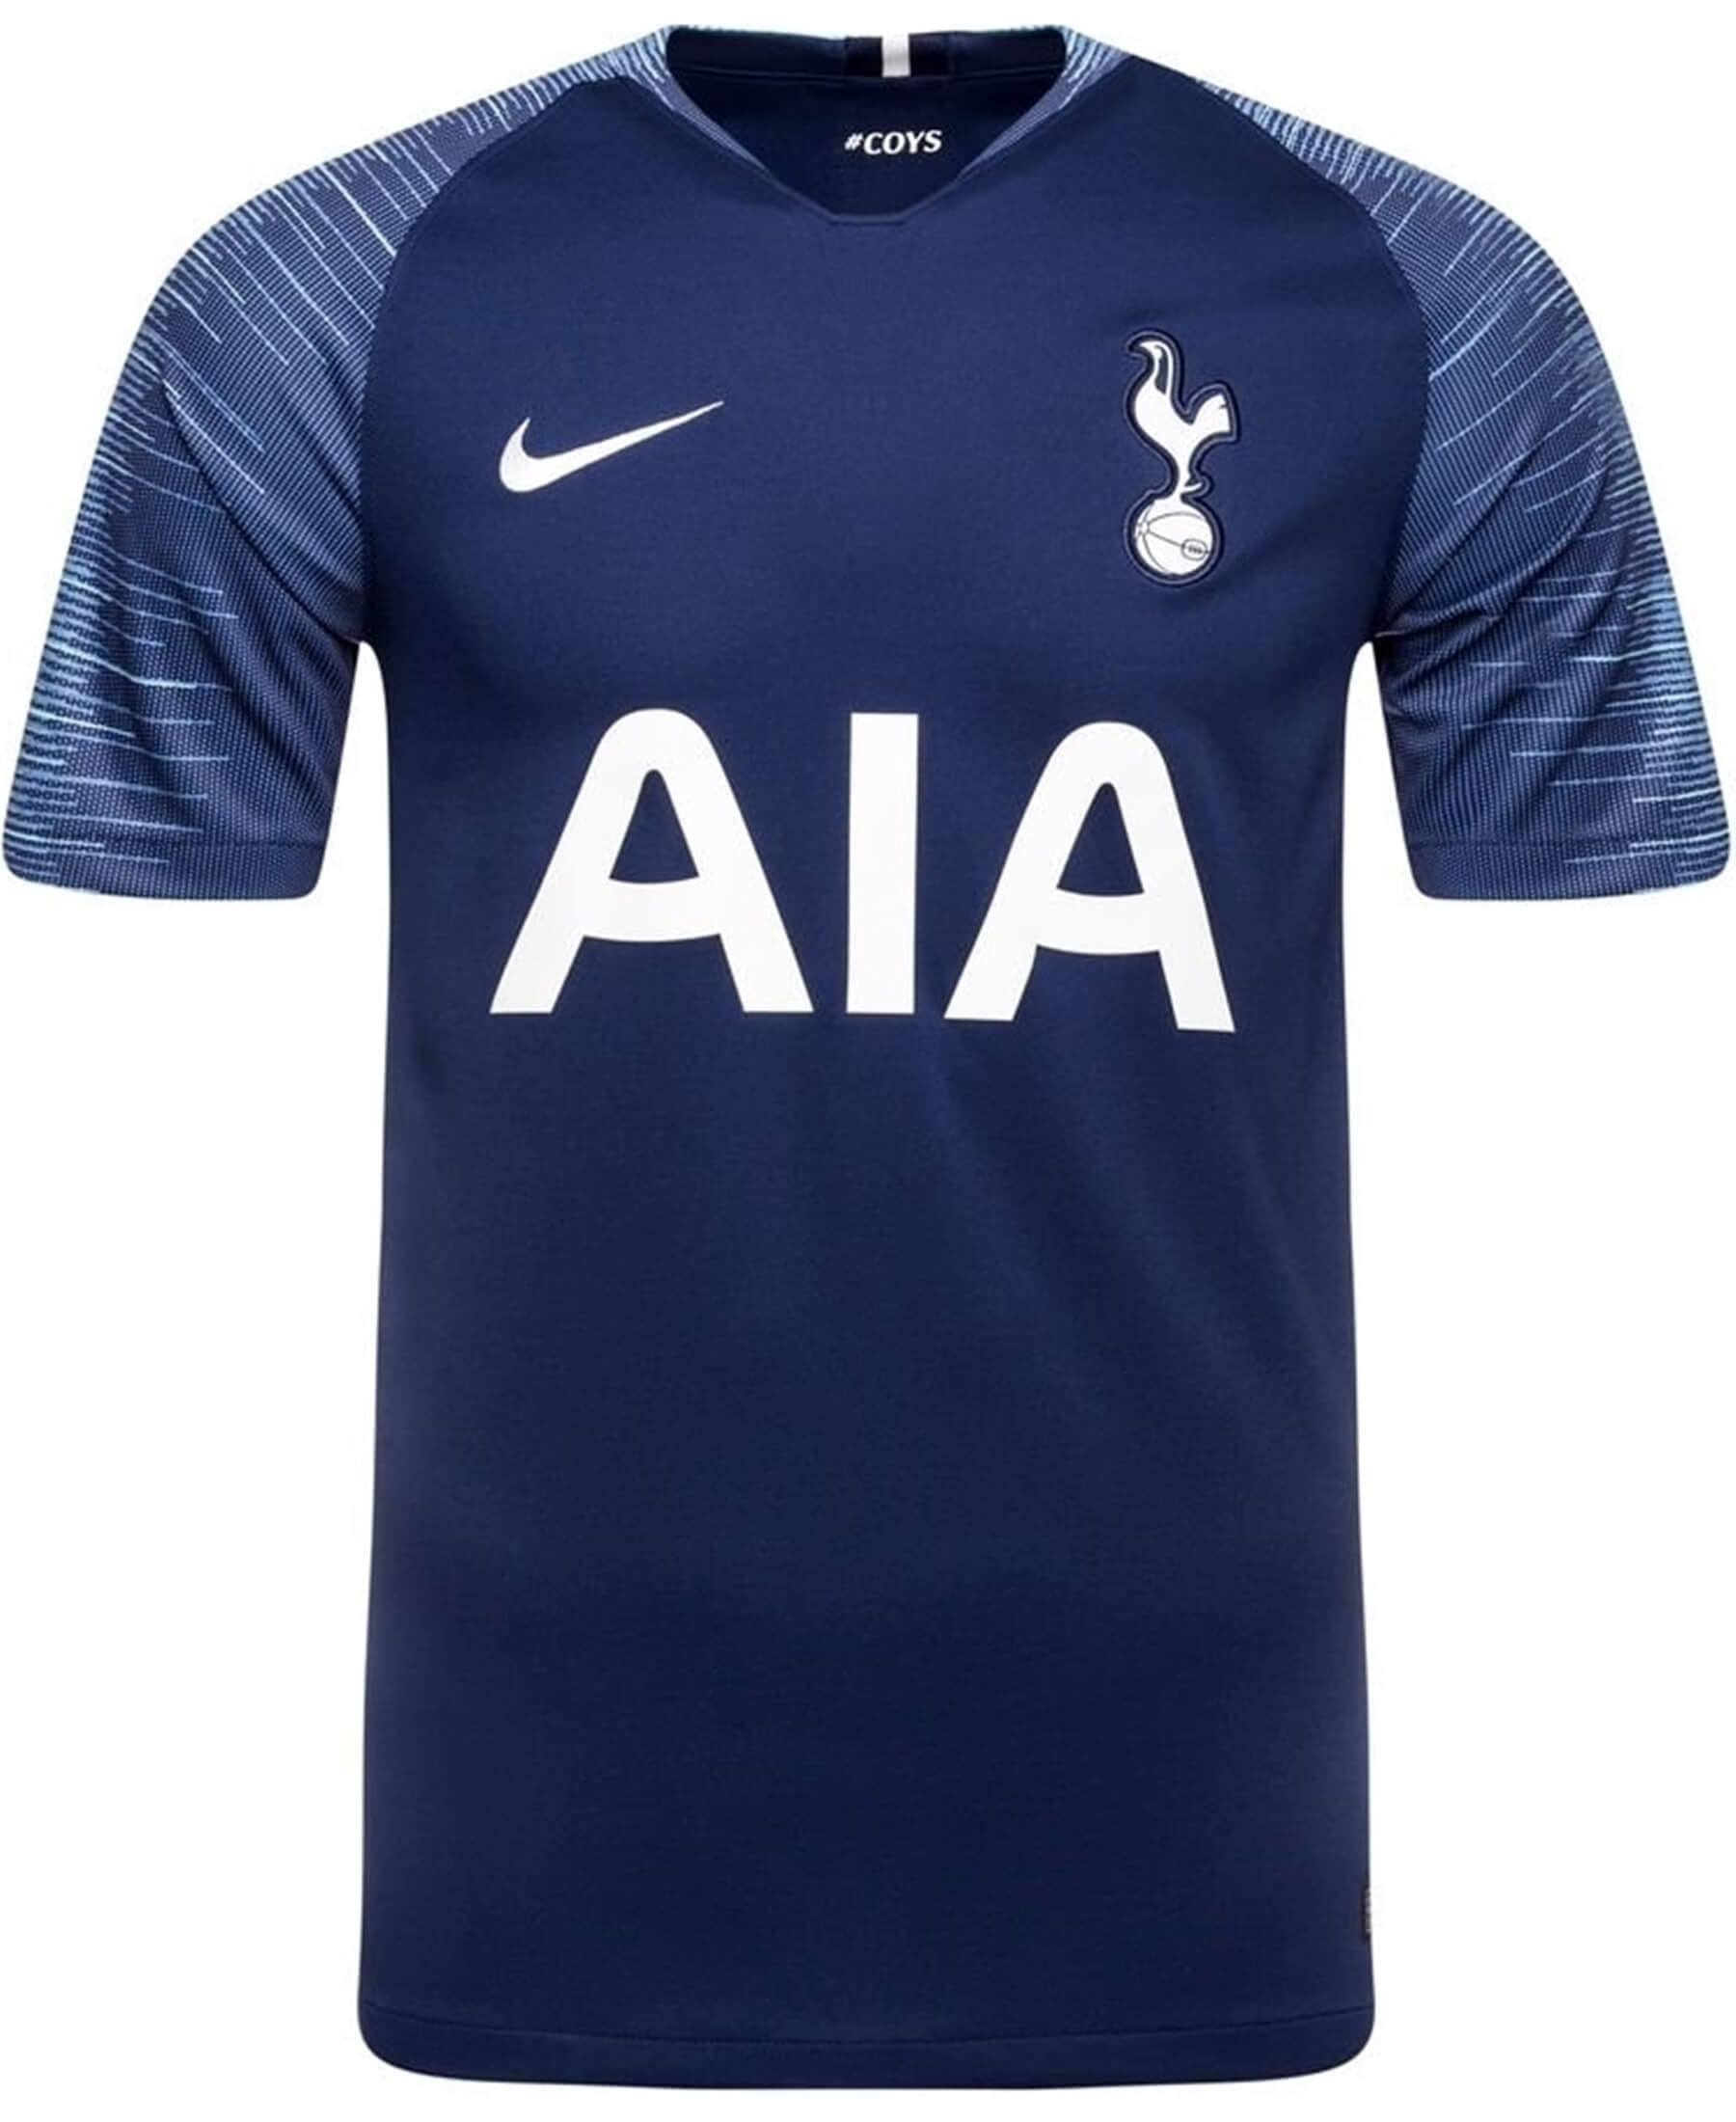 Sichern Sie sich das offizielle Nike Tottenham Hotspur (Spurs) Auswärtstrikot der Saison 2018/2019! Dieses hochwertige Trikot in der Farbe Blau ist ein absolutes Must-Have für alle Fans des Vereins. Es besticht nicht nur durch sein modernes Design, sondern auch durch den hohen Tragekomfort und die ausgezeichnete Qualität, die man von Nike-Produkten gewohnt ist.